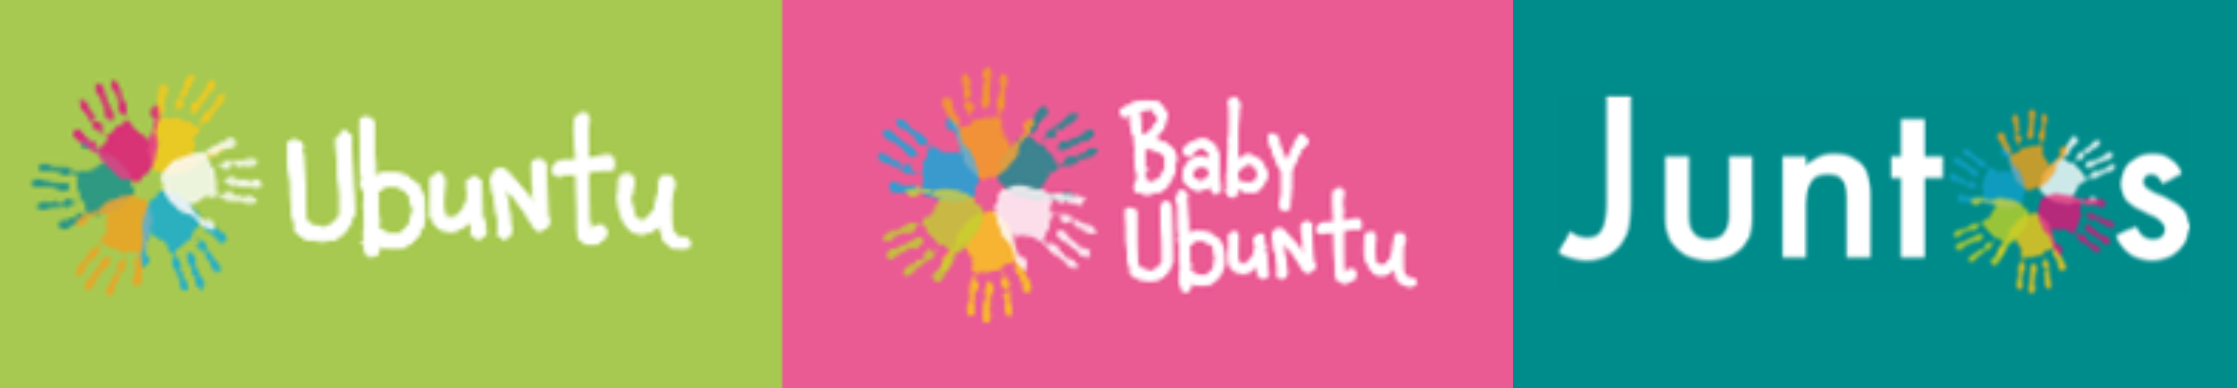 Ubuntu, Baby Ubuntu and Juntos logos